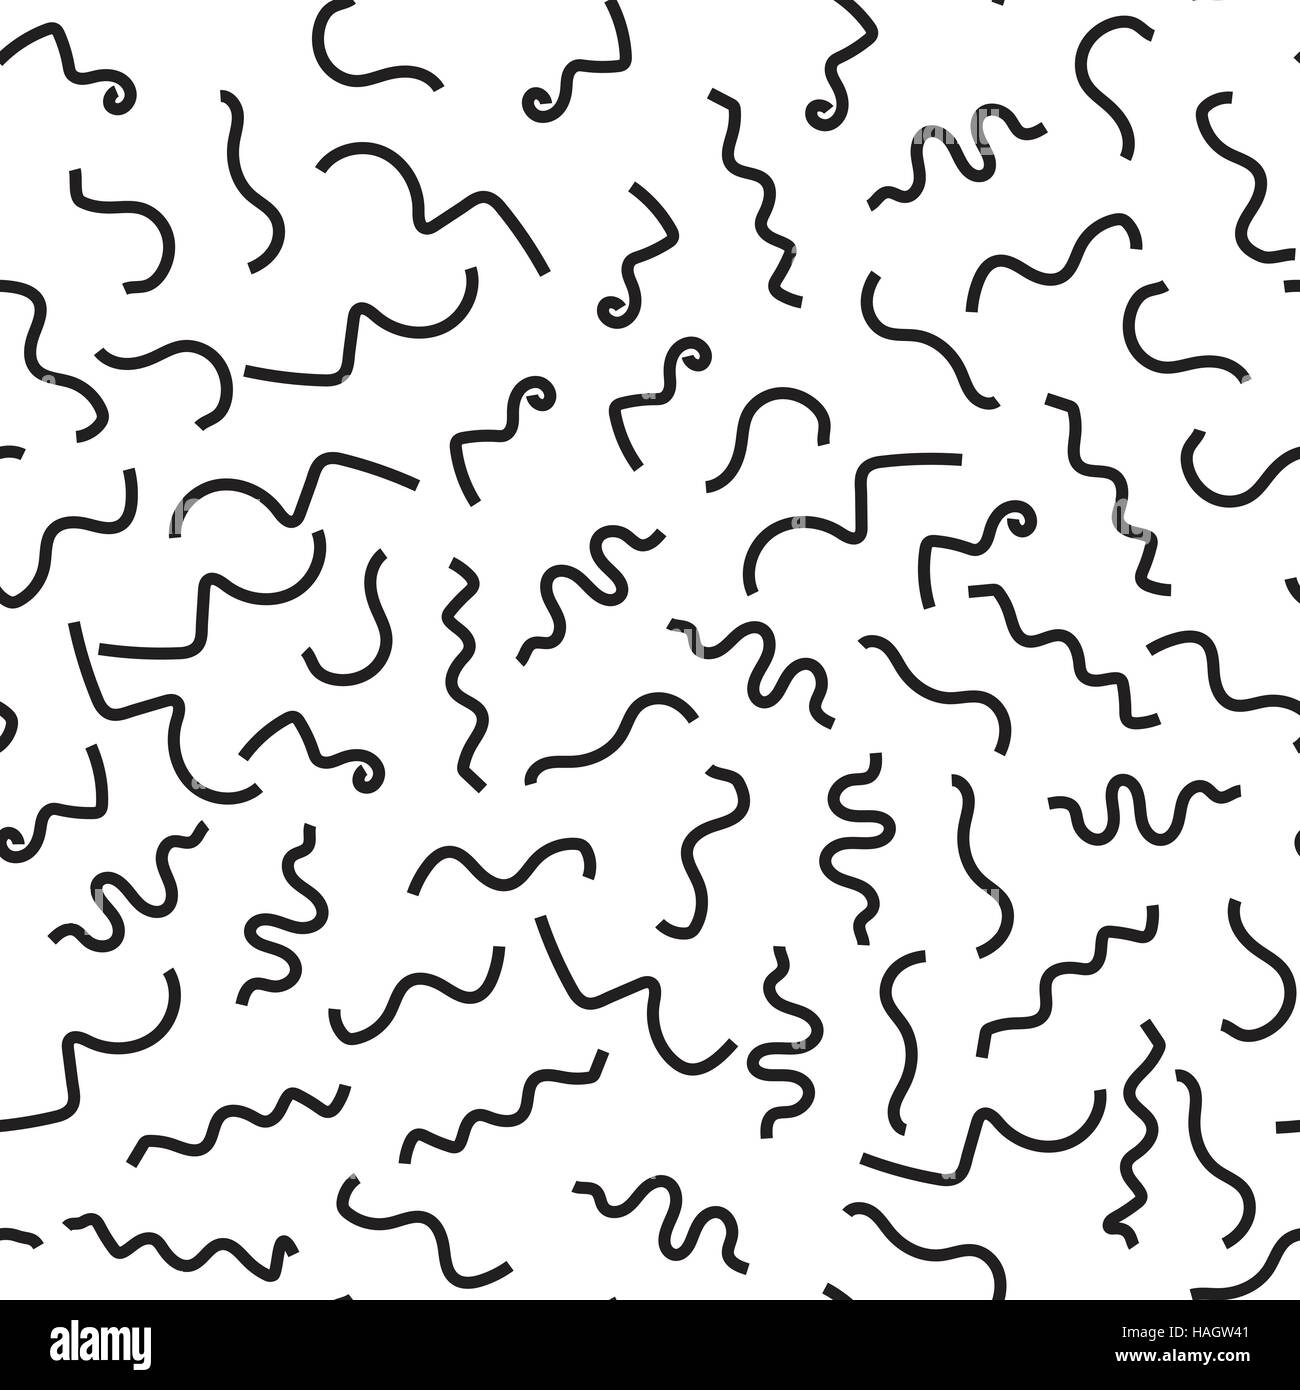 Abstrakten geometrischen minimal Musterdesign. Hintergrund mit chaotischen Formen und Linien. Handgezeichnete Kritzeleien Stock Vektor